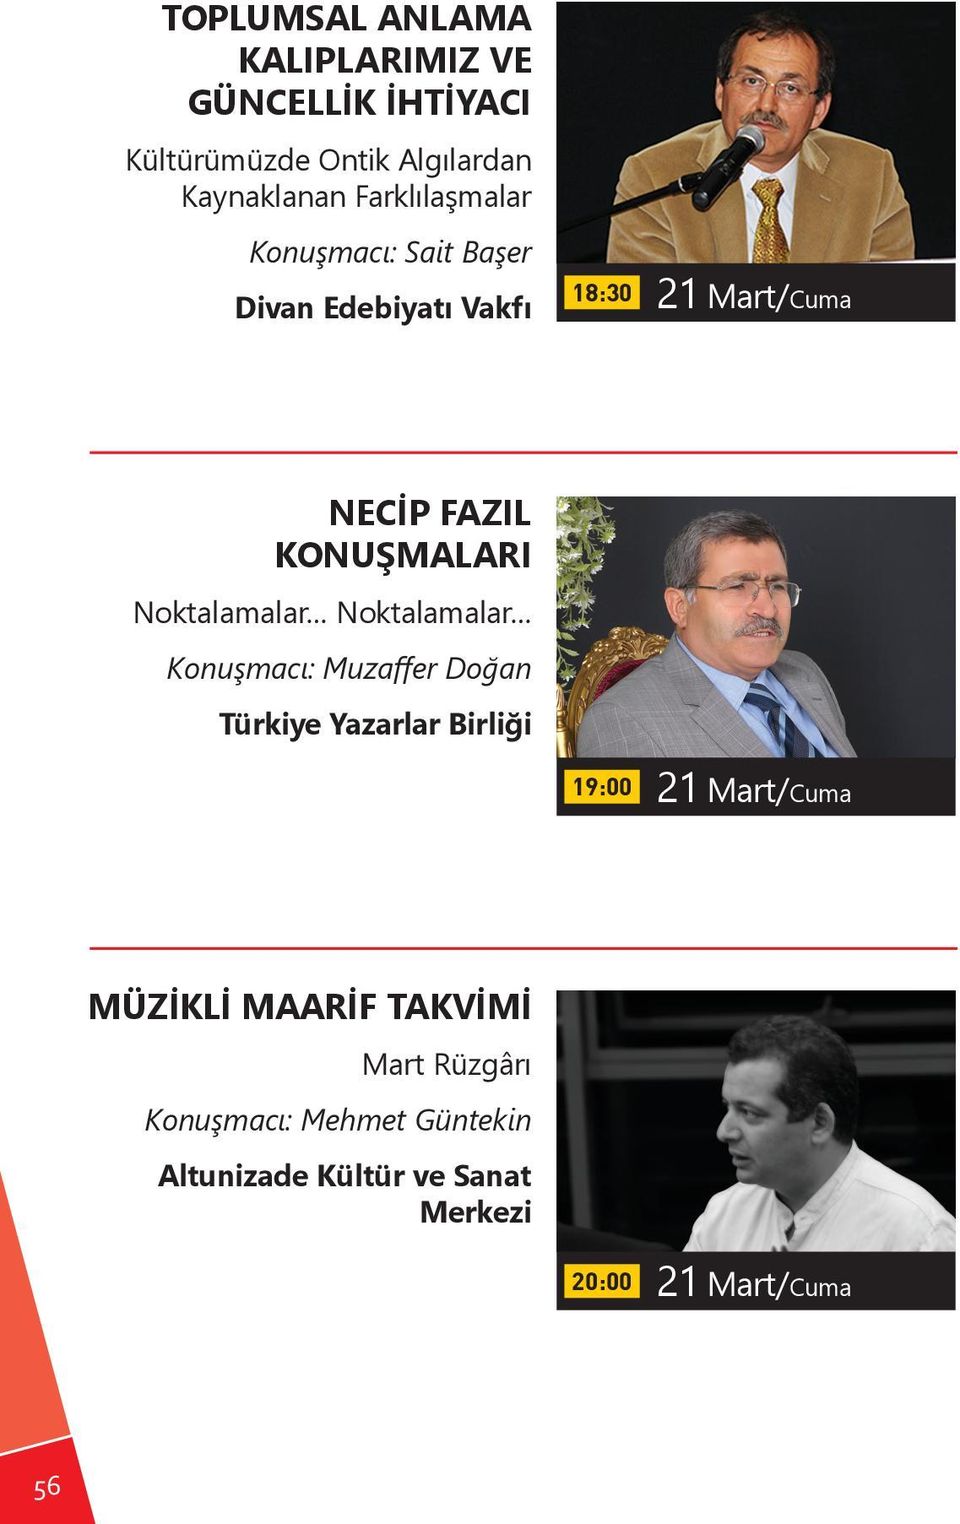 Noktalamalar Noktalamalar Konuşmacı: Muzaffer Doğan Türkiye Yazarlar Birliği 19:00 21 Mart/Cuma